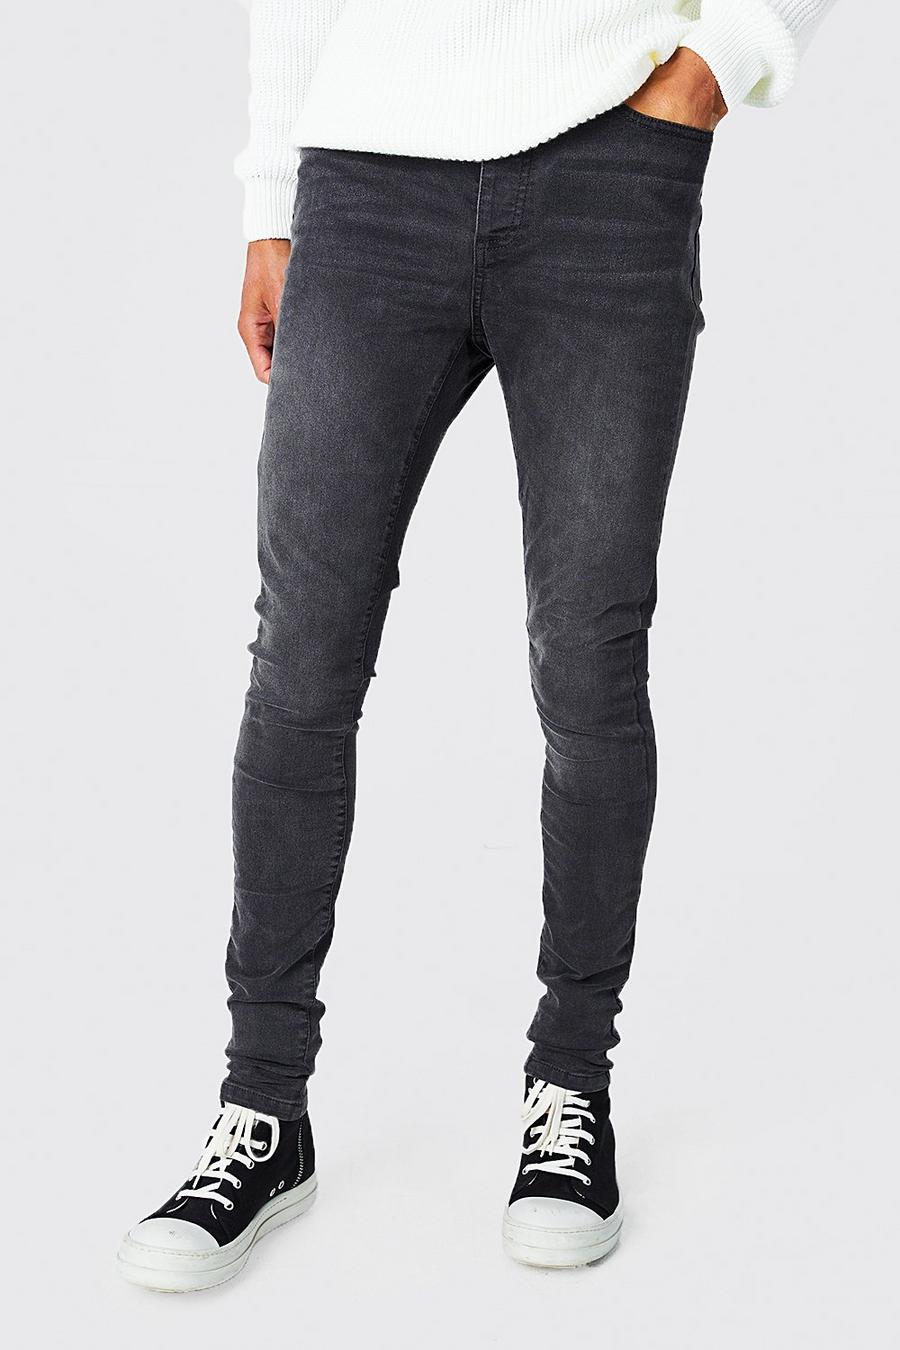 Jeans Tall Skinny Fit in Stretch con cotone riciclato, Charcoal grigio